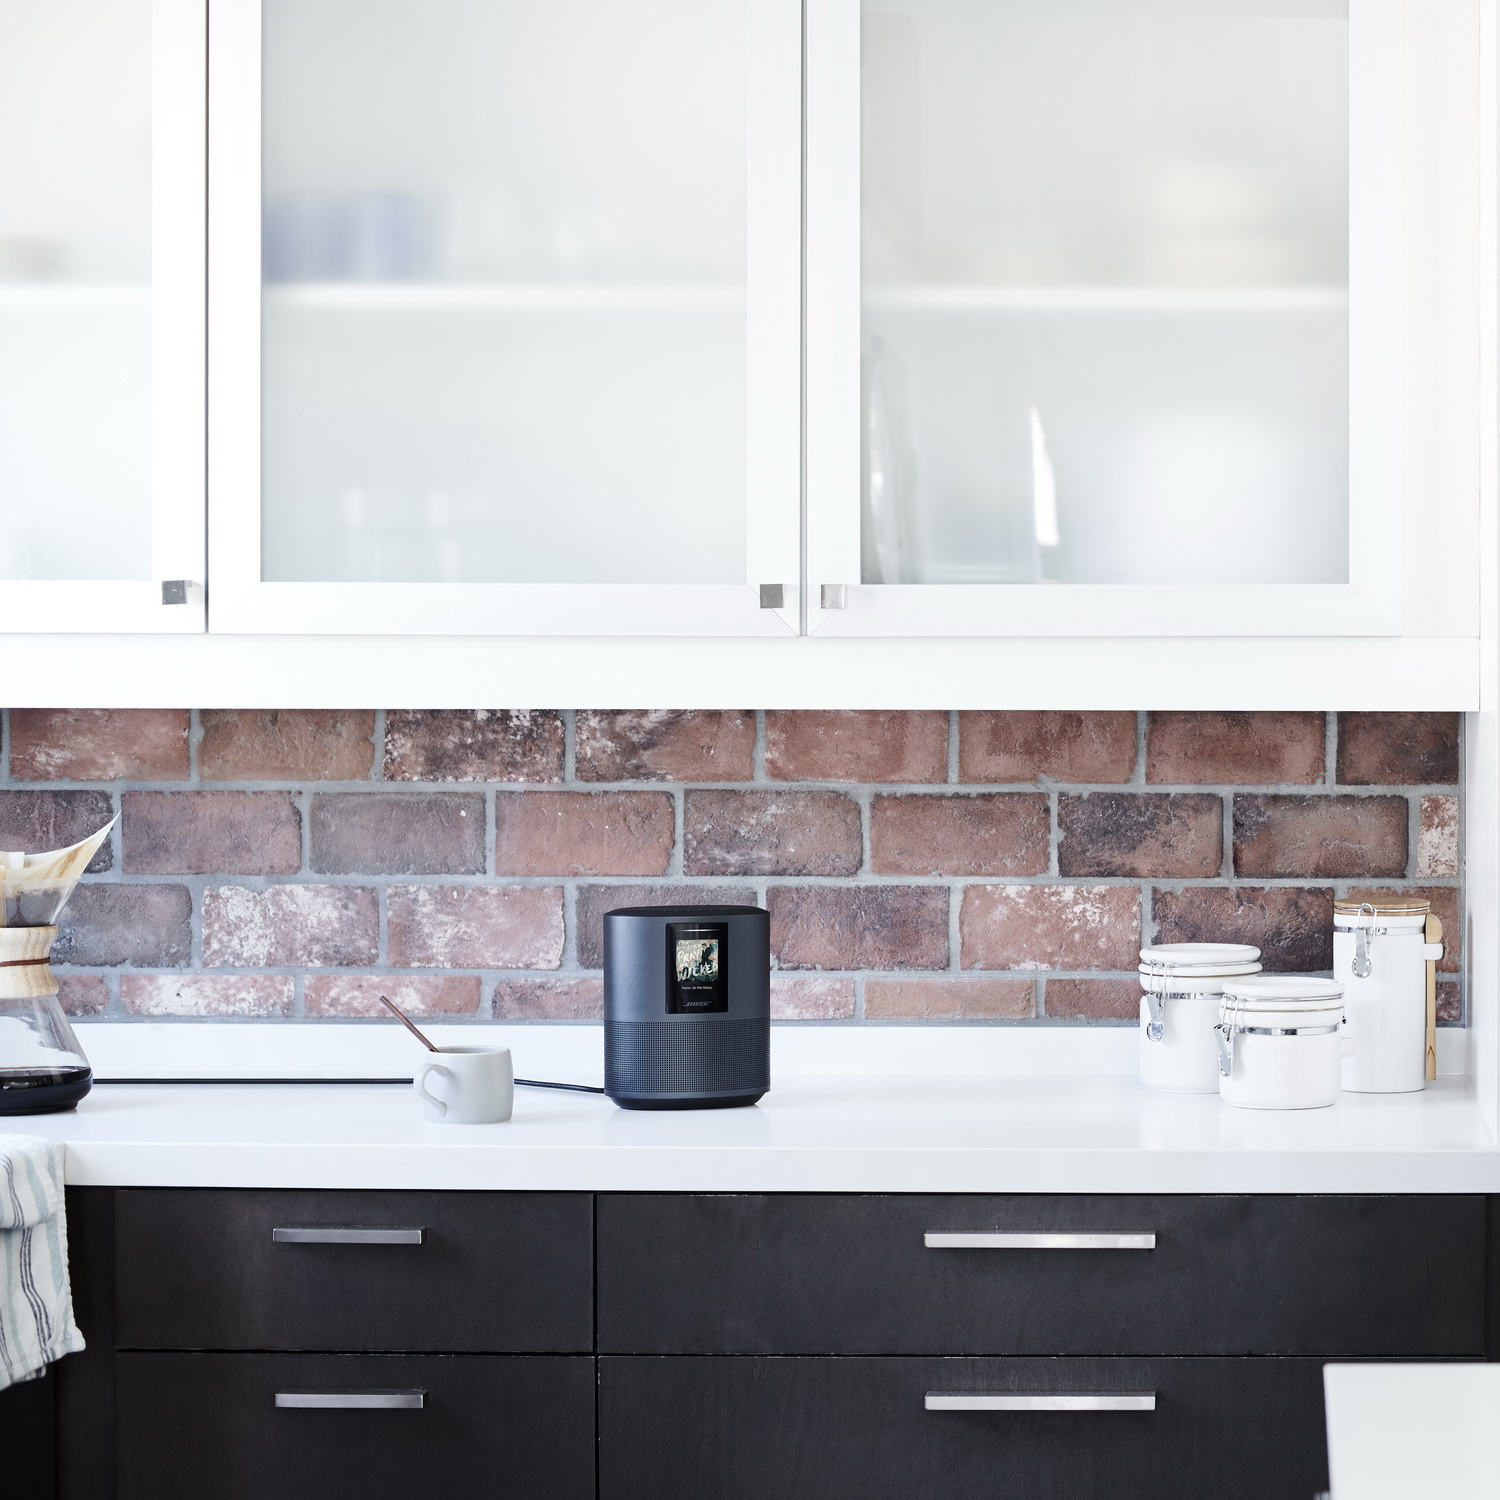 Bose Home Speaker 500_kitchen_resize.jpg